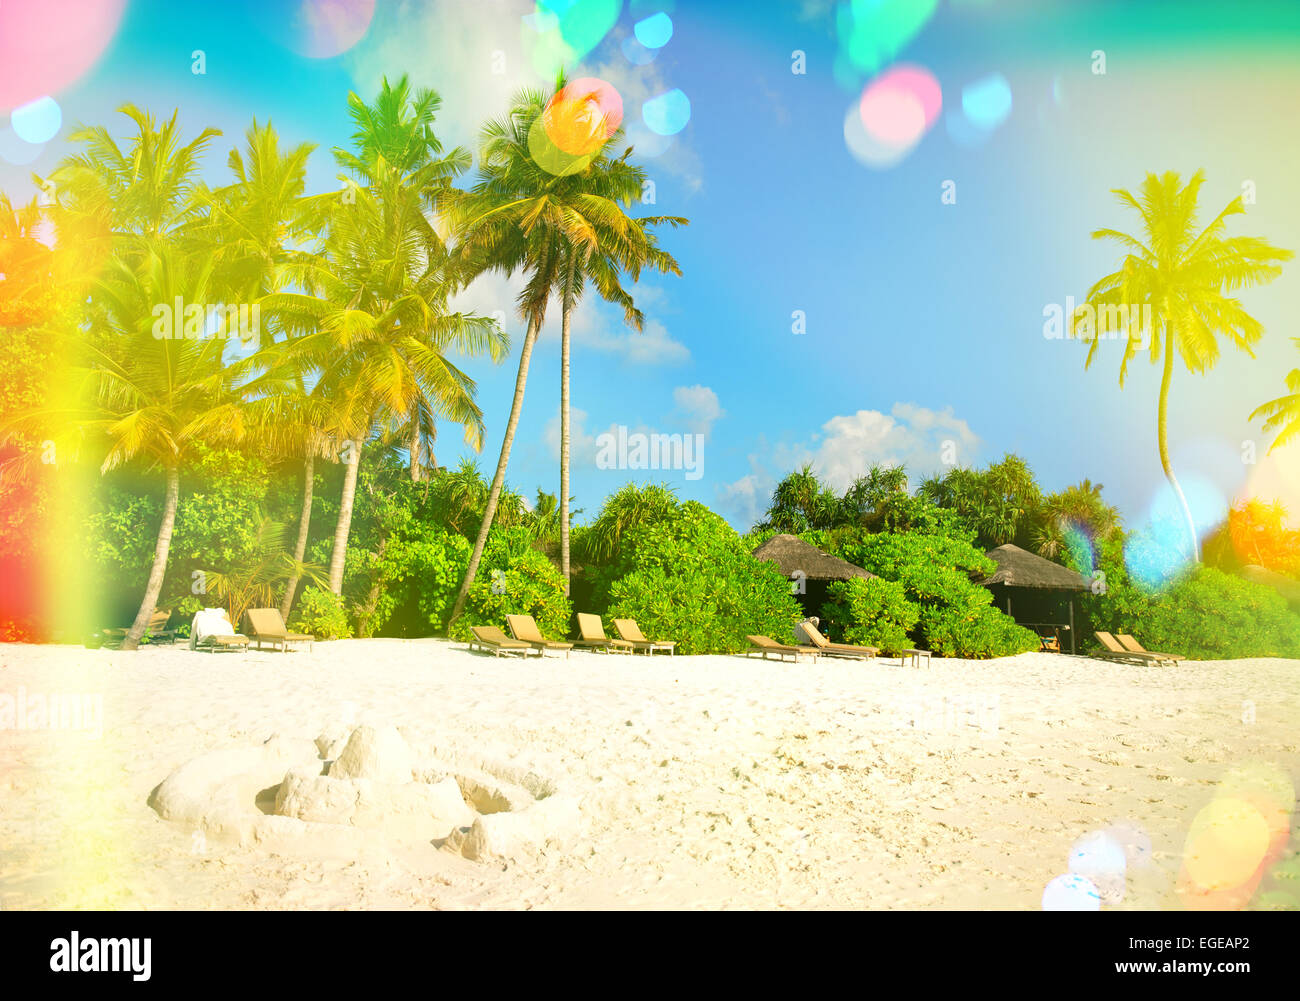 La plage de sable tropicale avec palmiers et ciel bleu ensoleillé. Tons style vintage photo avec pénétration de la lumière et reflets de l'objectif Banque D'Images